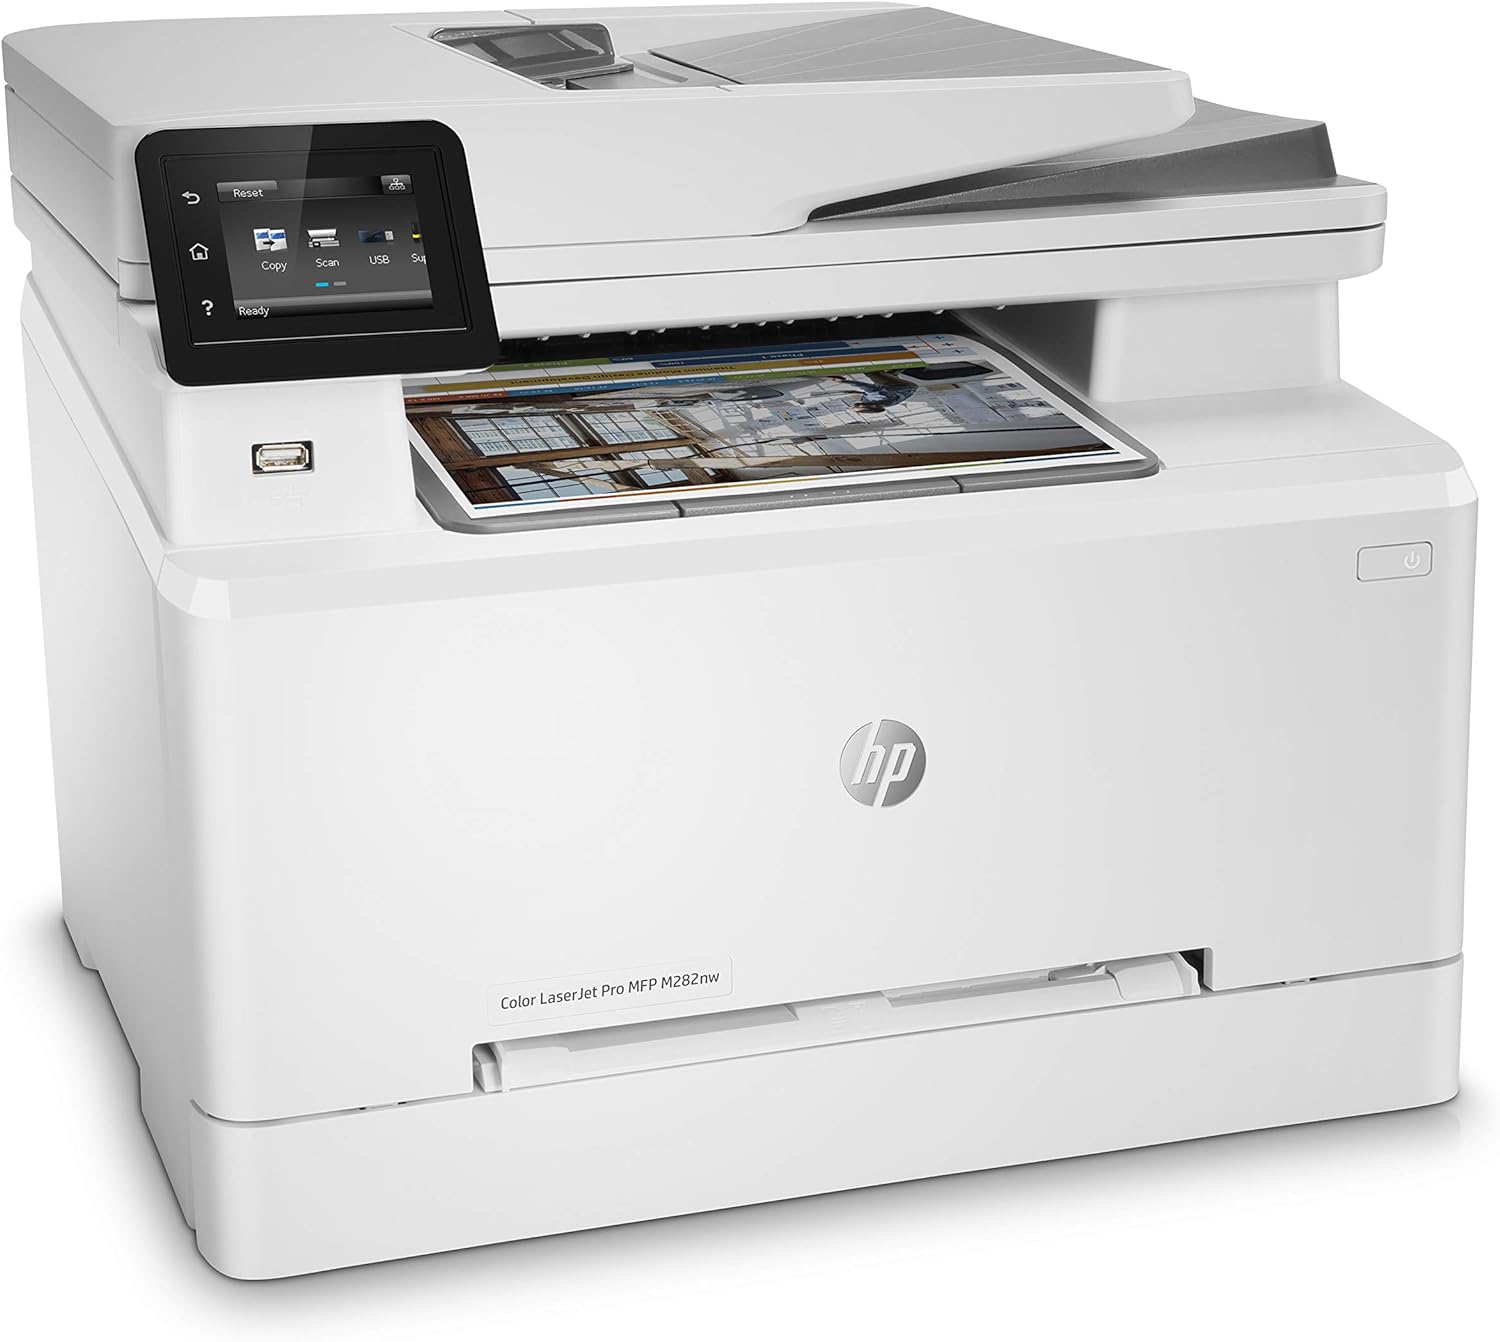 HP Color LaserJet Pro M255dw 7KW64A, A4-printer met enkele functie, automatisch dubbelzijdig afdrukken in kleur, 21 ppm, USB, Wi-Fi, Ethernet, touchscreen van 6,85 cm, wit